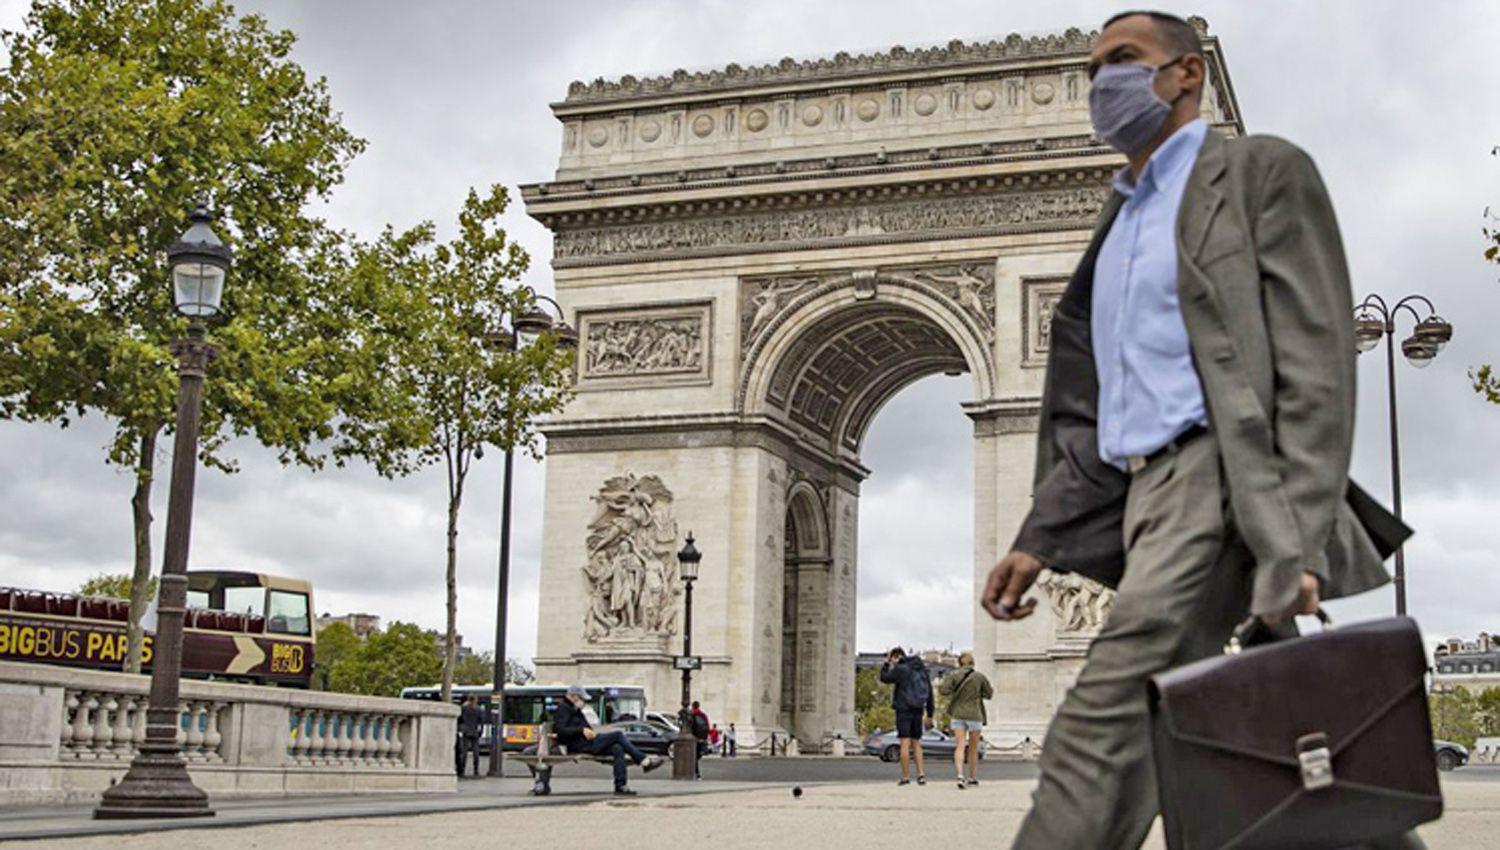 Reacutecord de contagios en Francia - ampliacutean el toque de queda